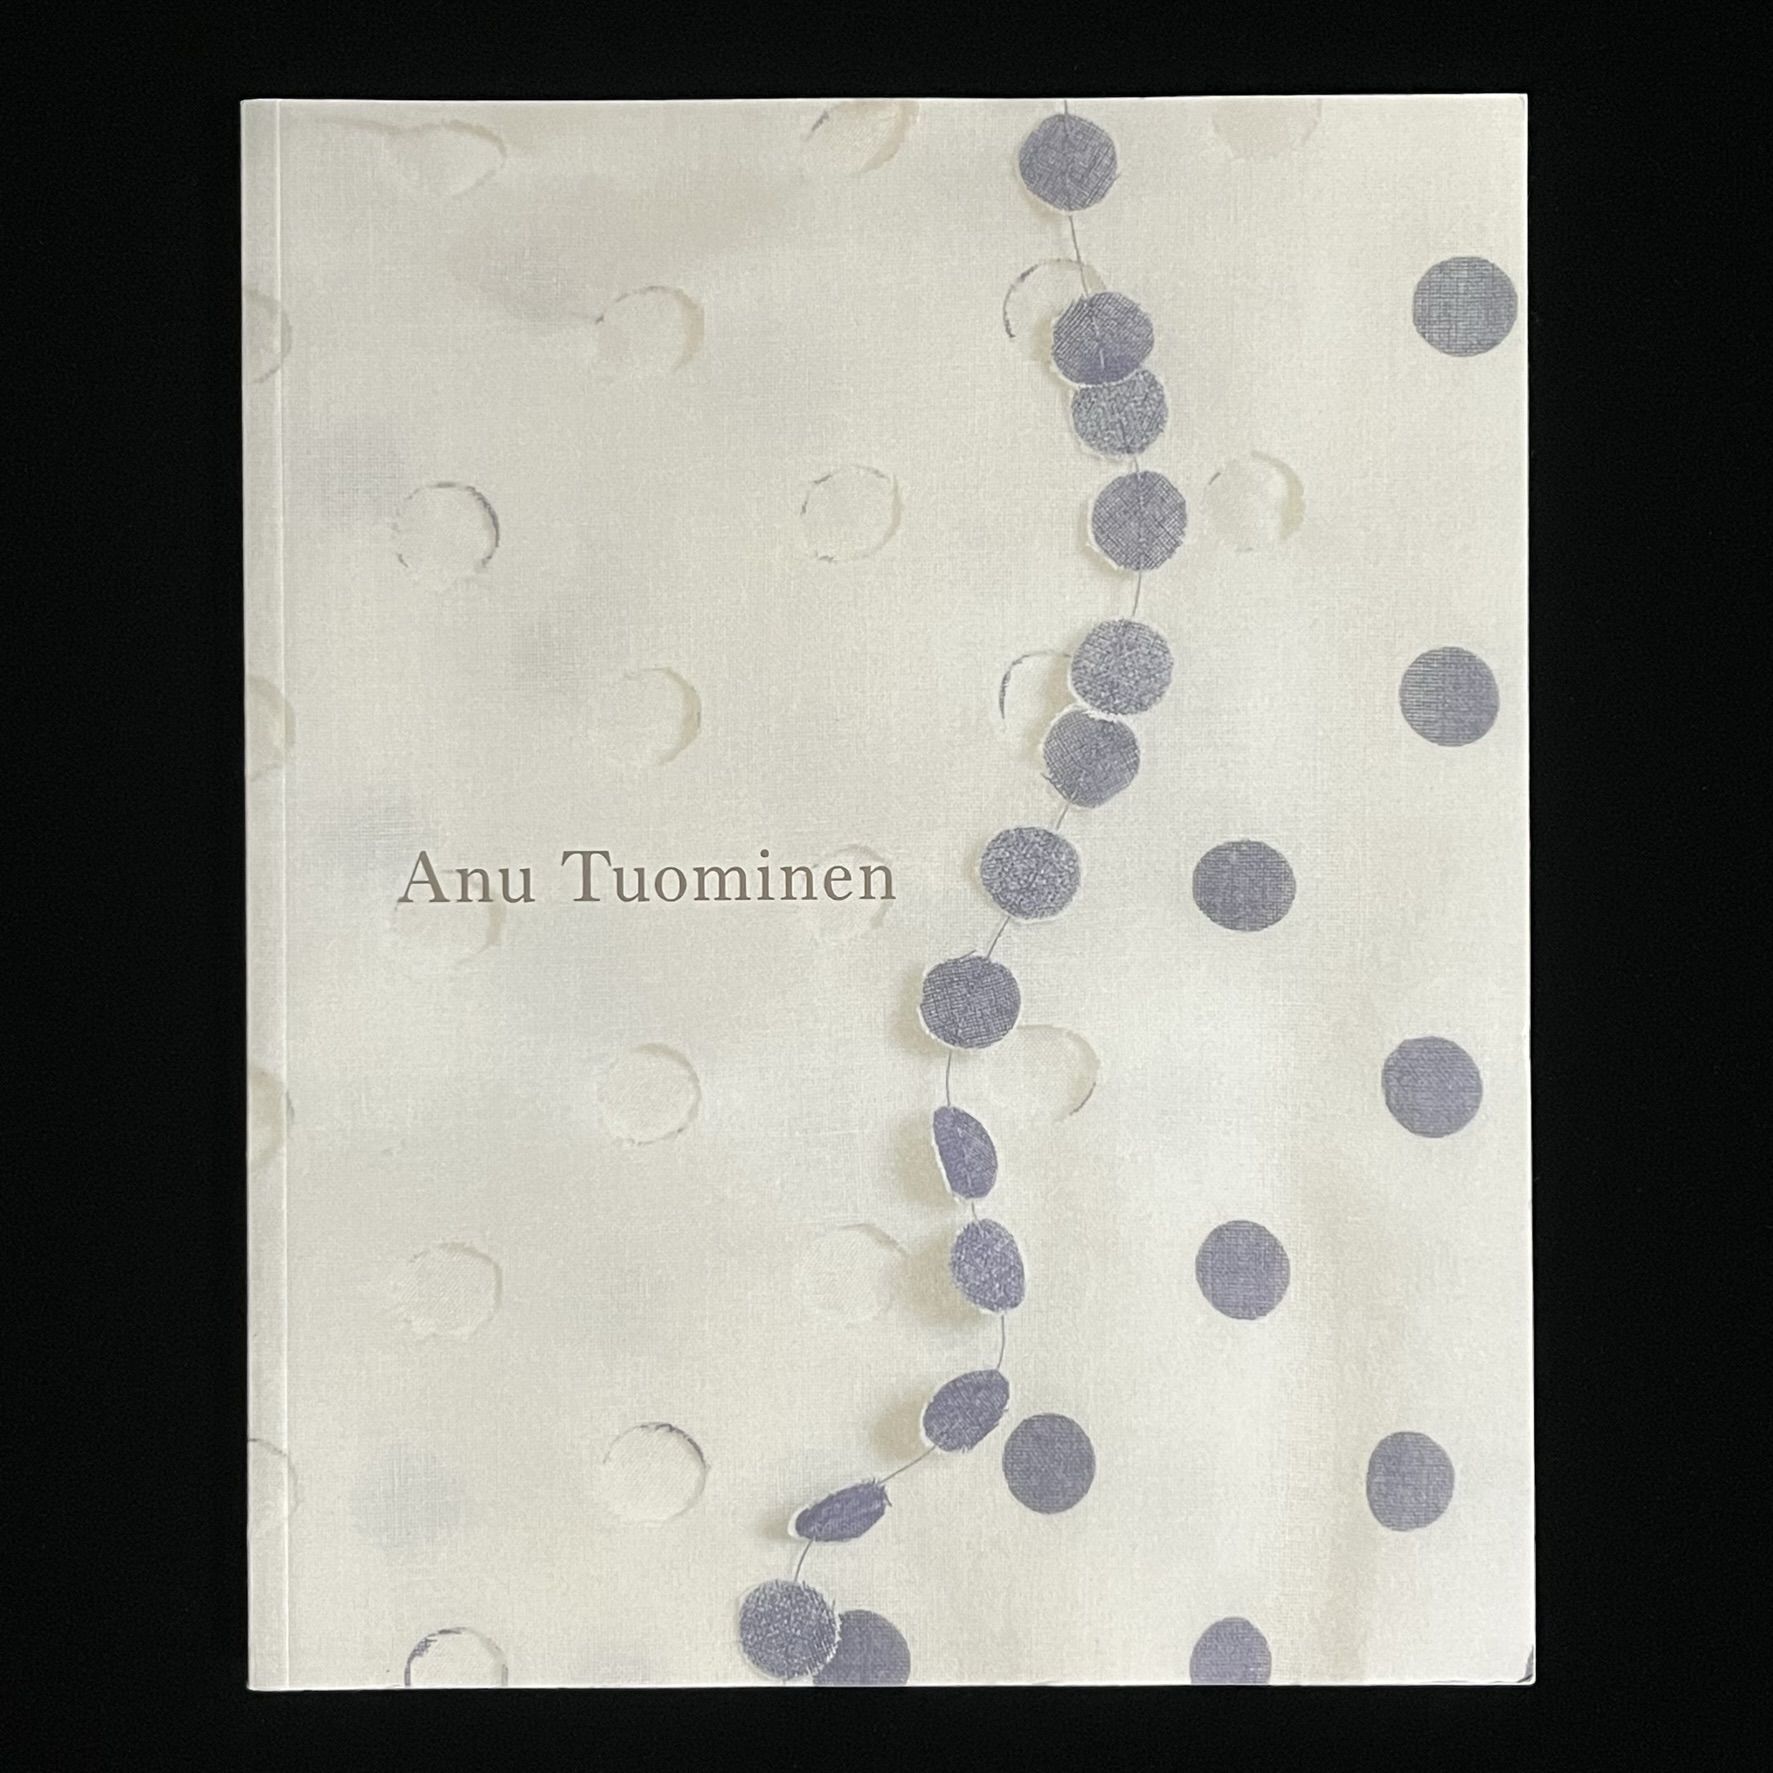 『Anu Tuominen』の本の表紙の写真。切り抜かれたグレー丸い布が糸でつながれていて、切り抜かれた布がその下に敷かれています。この写真はお洋服の一部を拡大したもので、下に敷かれているのはお洋服の生地、切り抜かれた丸のつながりはネックレスになっています。